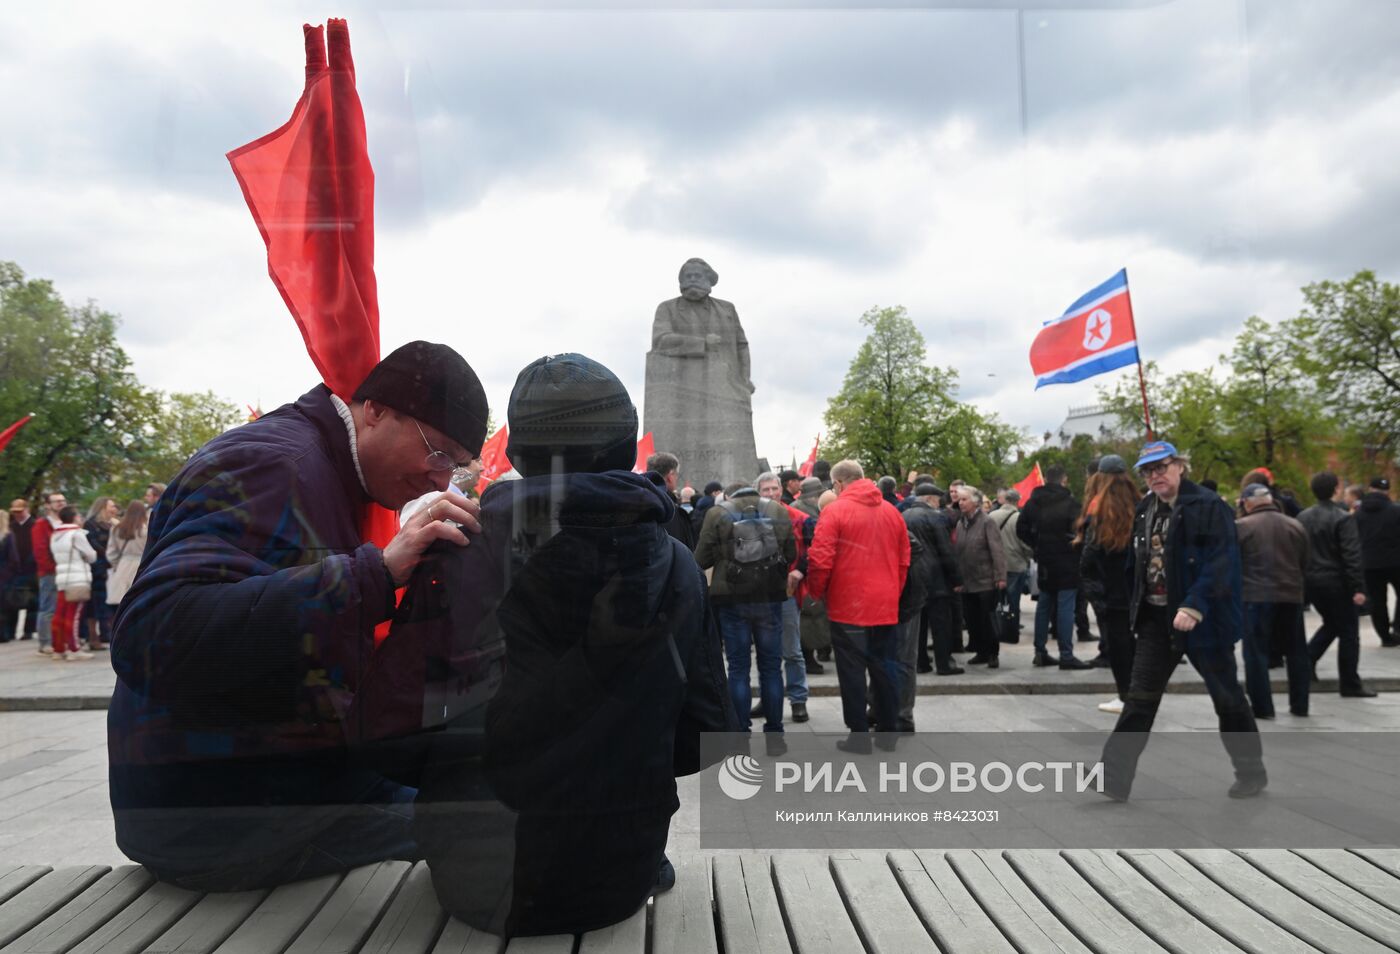 Встреча депутатов-коммунистов с избирателями в Москве 